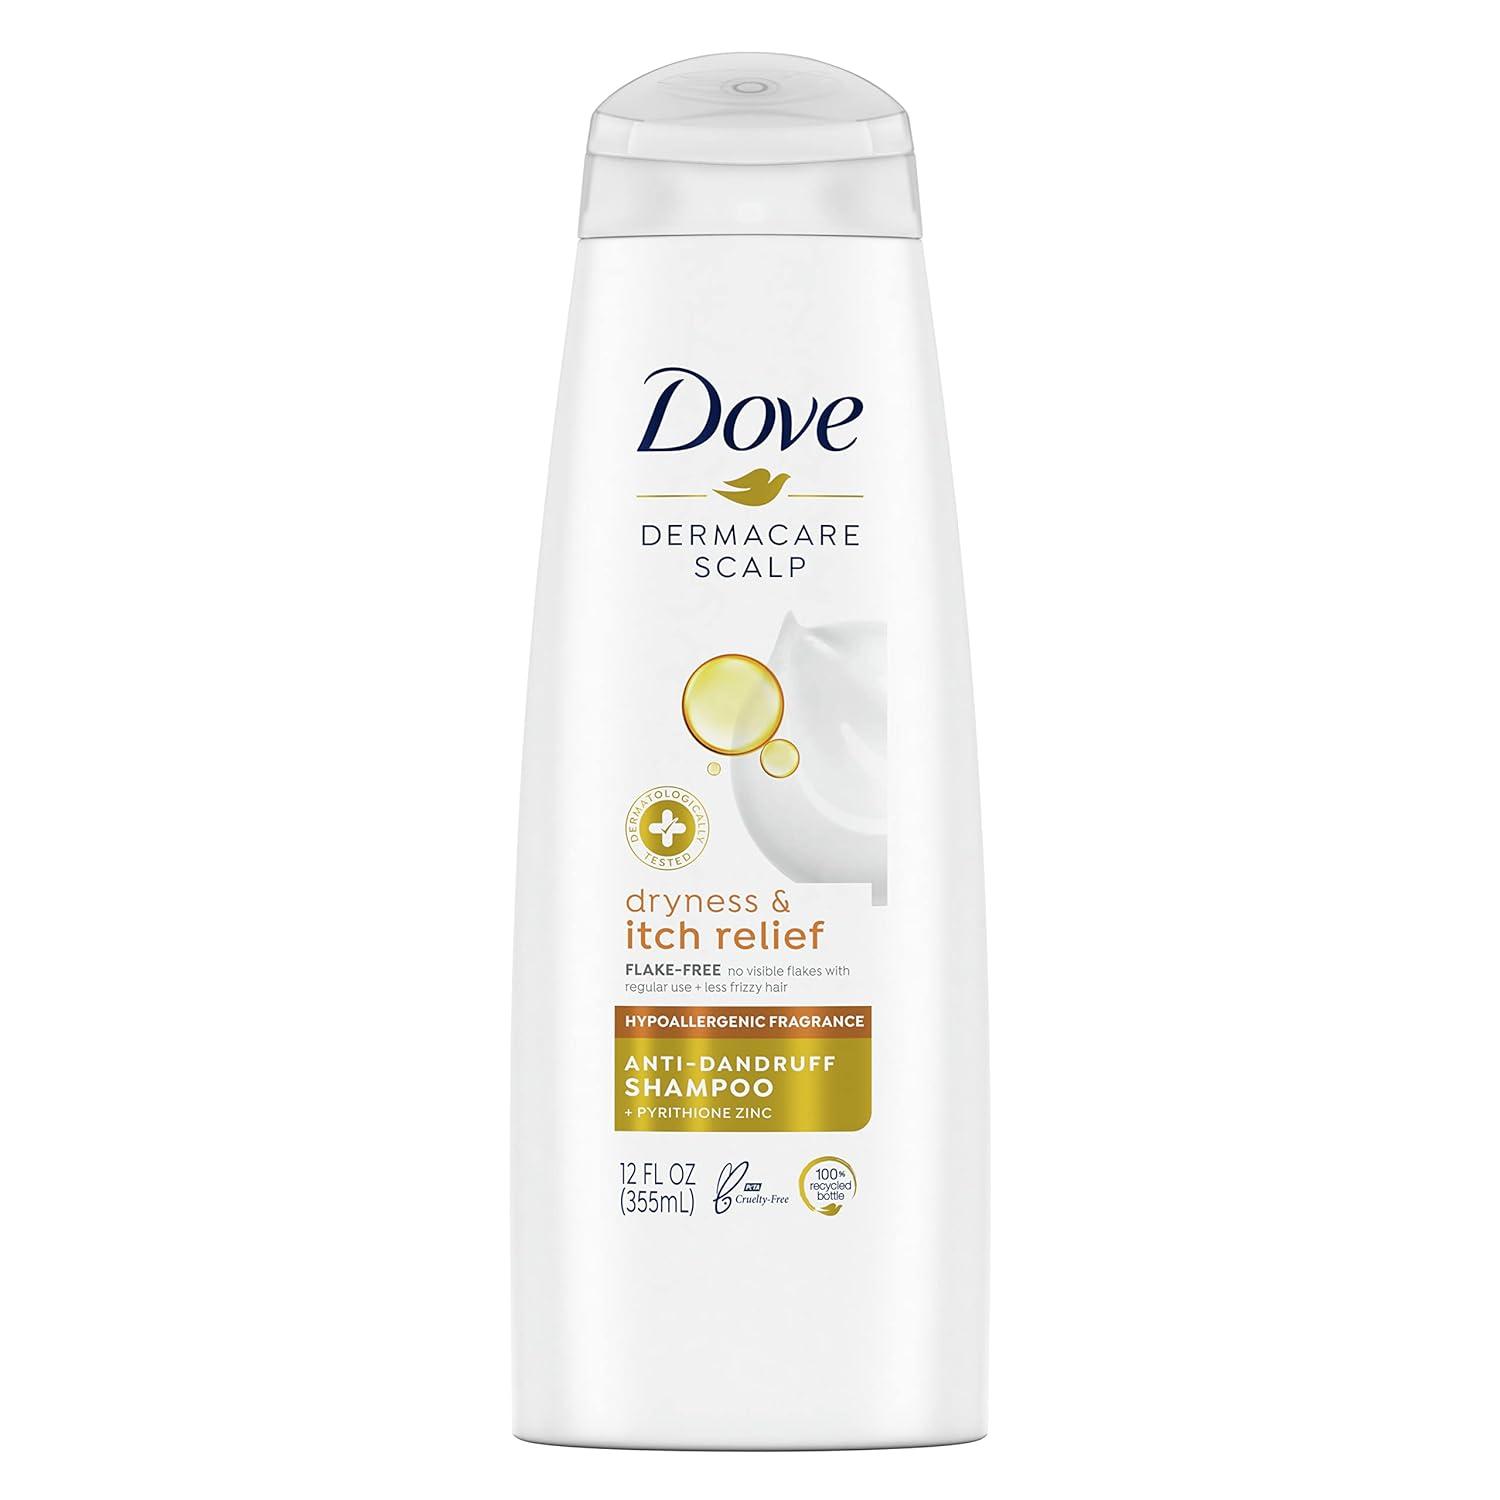 Dove DermaCare Anti Dandruff Shampoo for $1.90